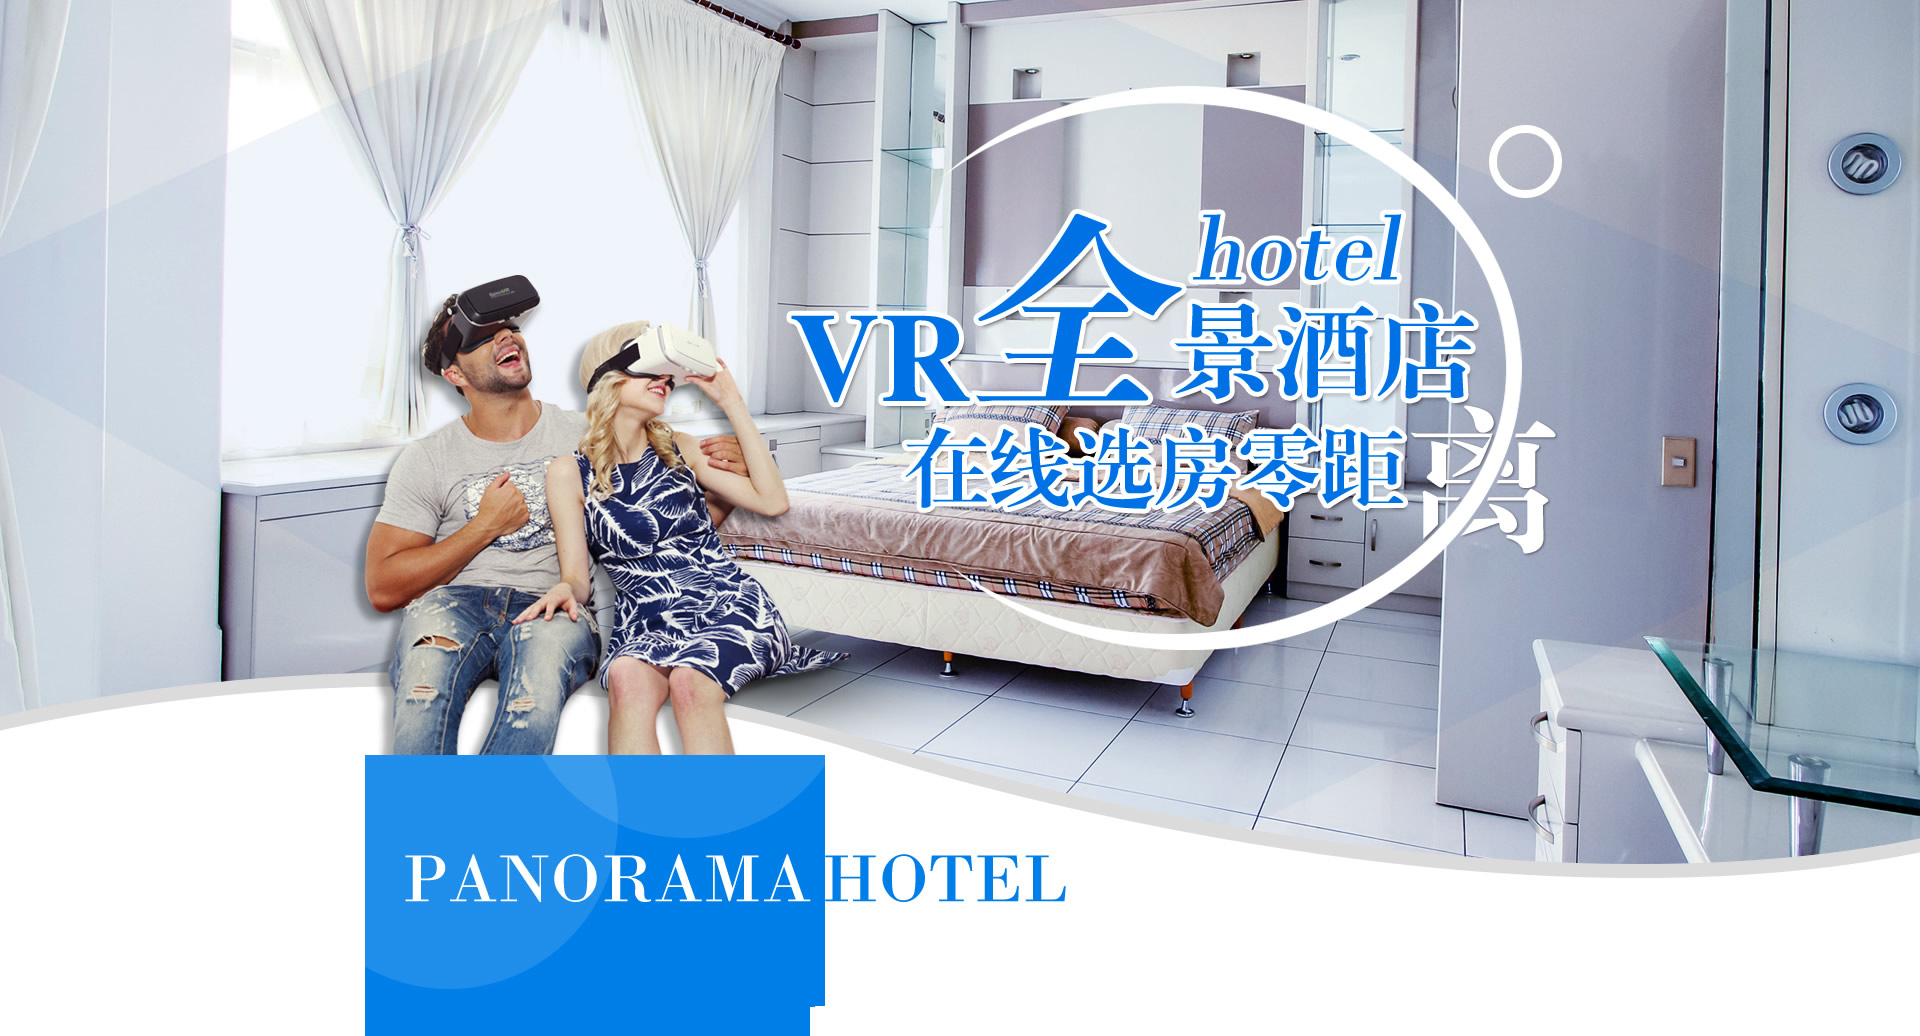 VR全景酒店在线选房零距离